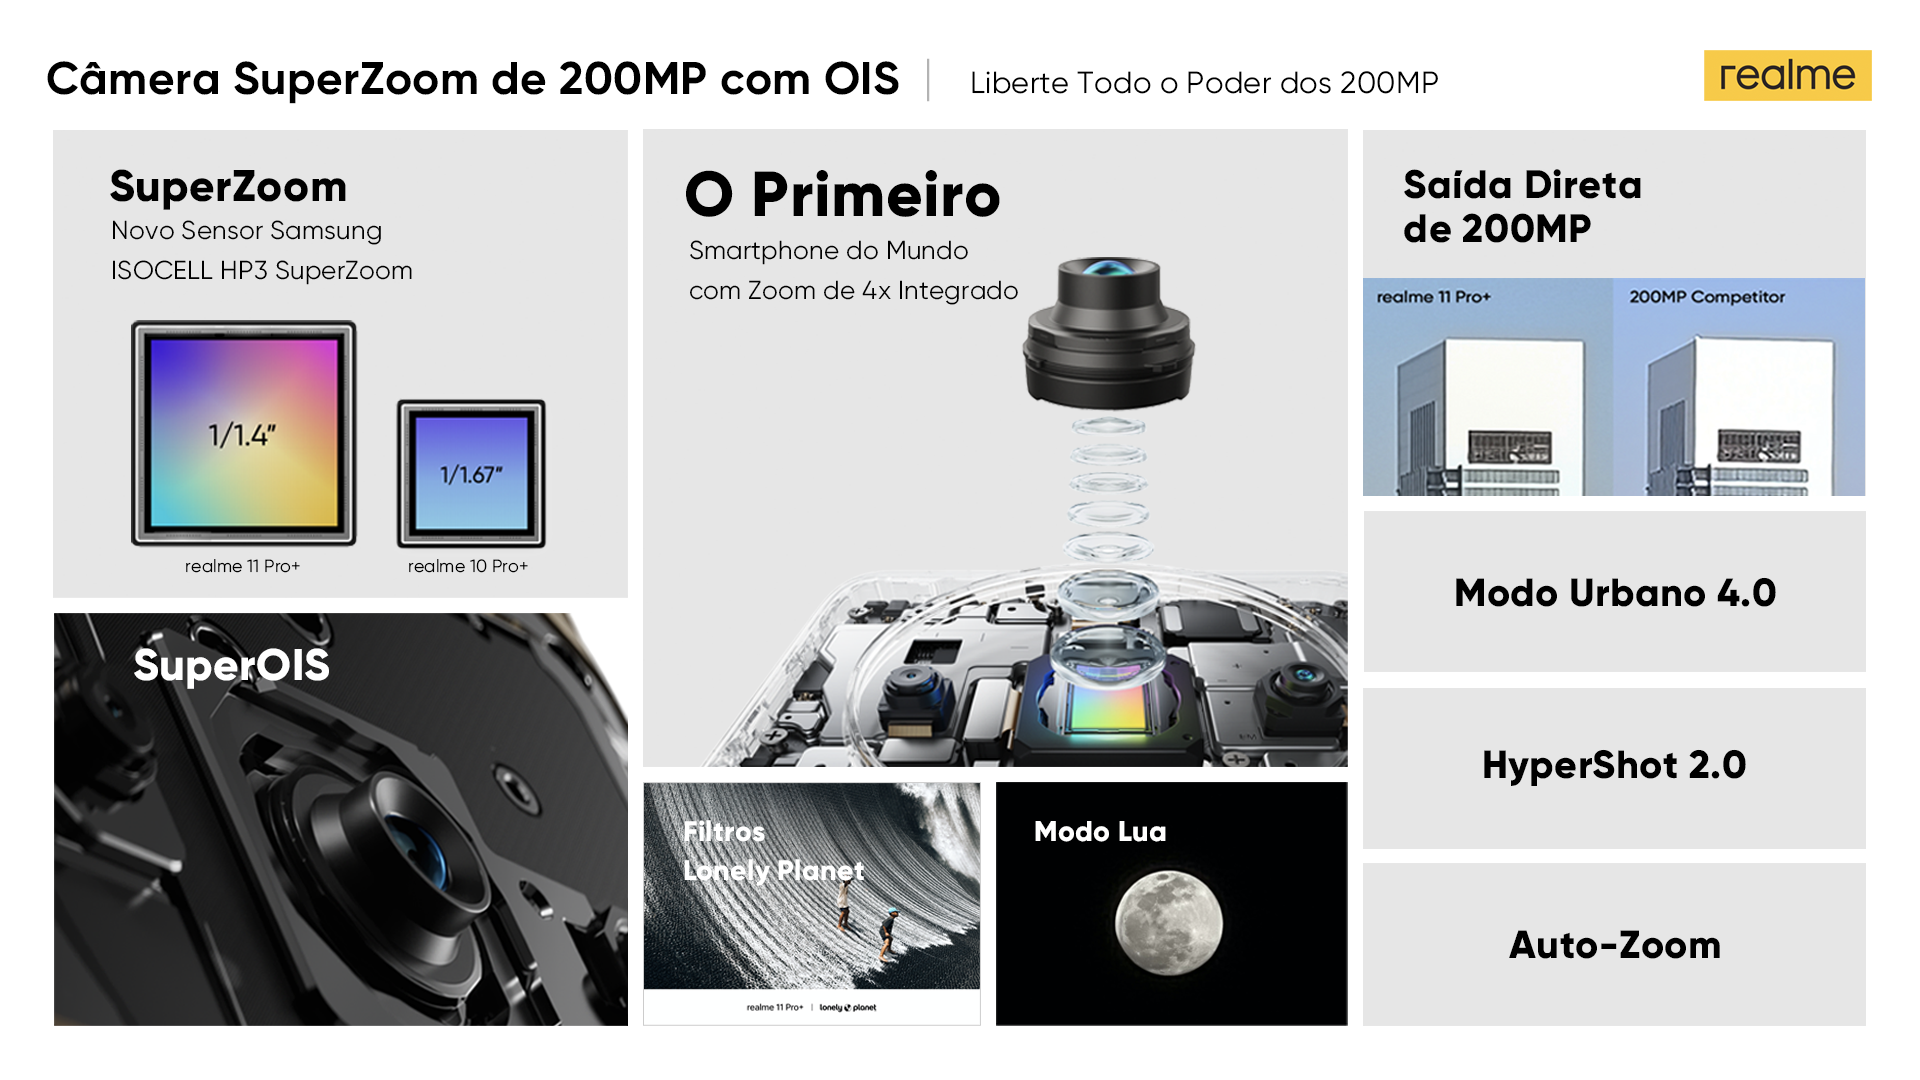 Imagem mostra alguns detalhes técnicos da câmera do realme 11 Pro+ 5G, que chegará ao Brasil em julho